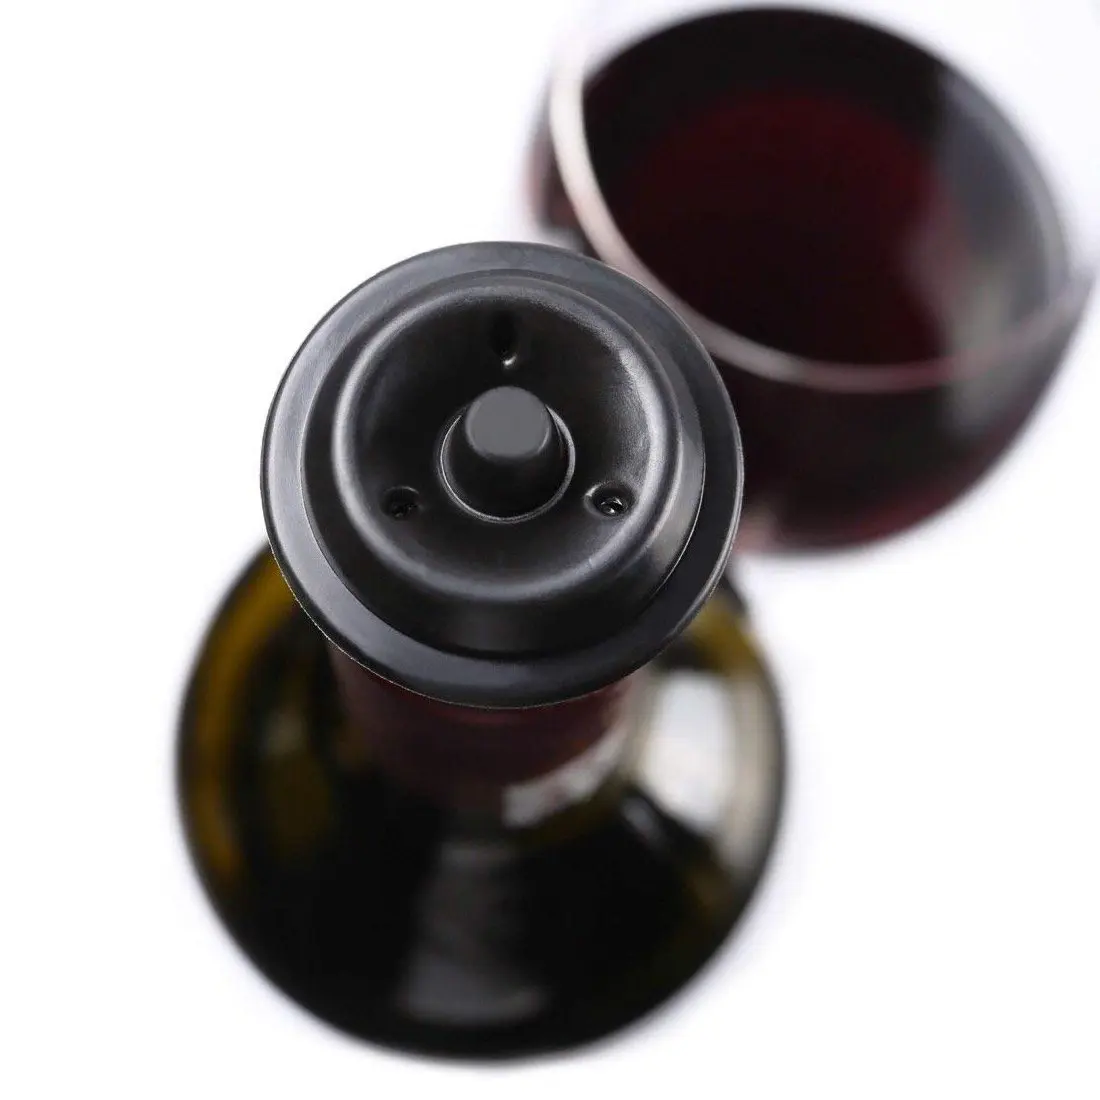 14 вакуумная пробка для хранения консервантов в винных бутылках сохраняет вкус вина-лучший винный воздух va